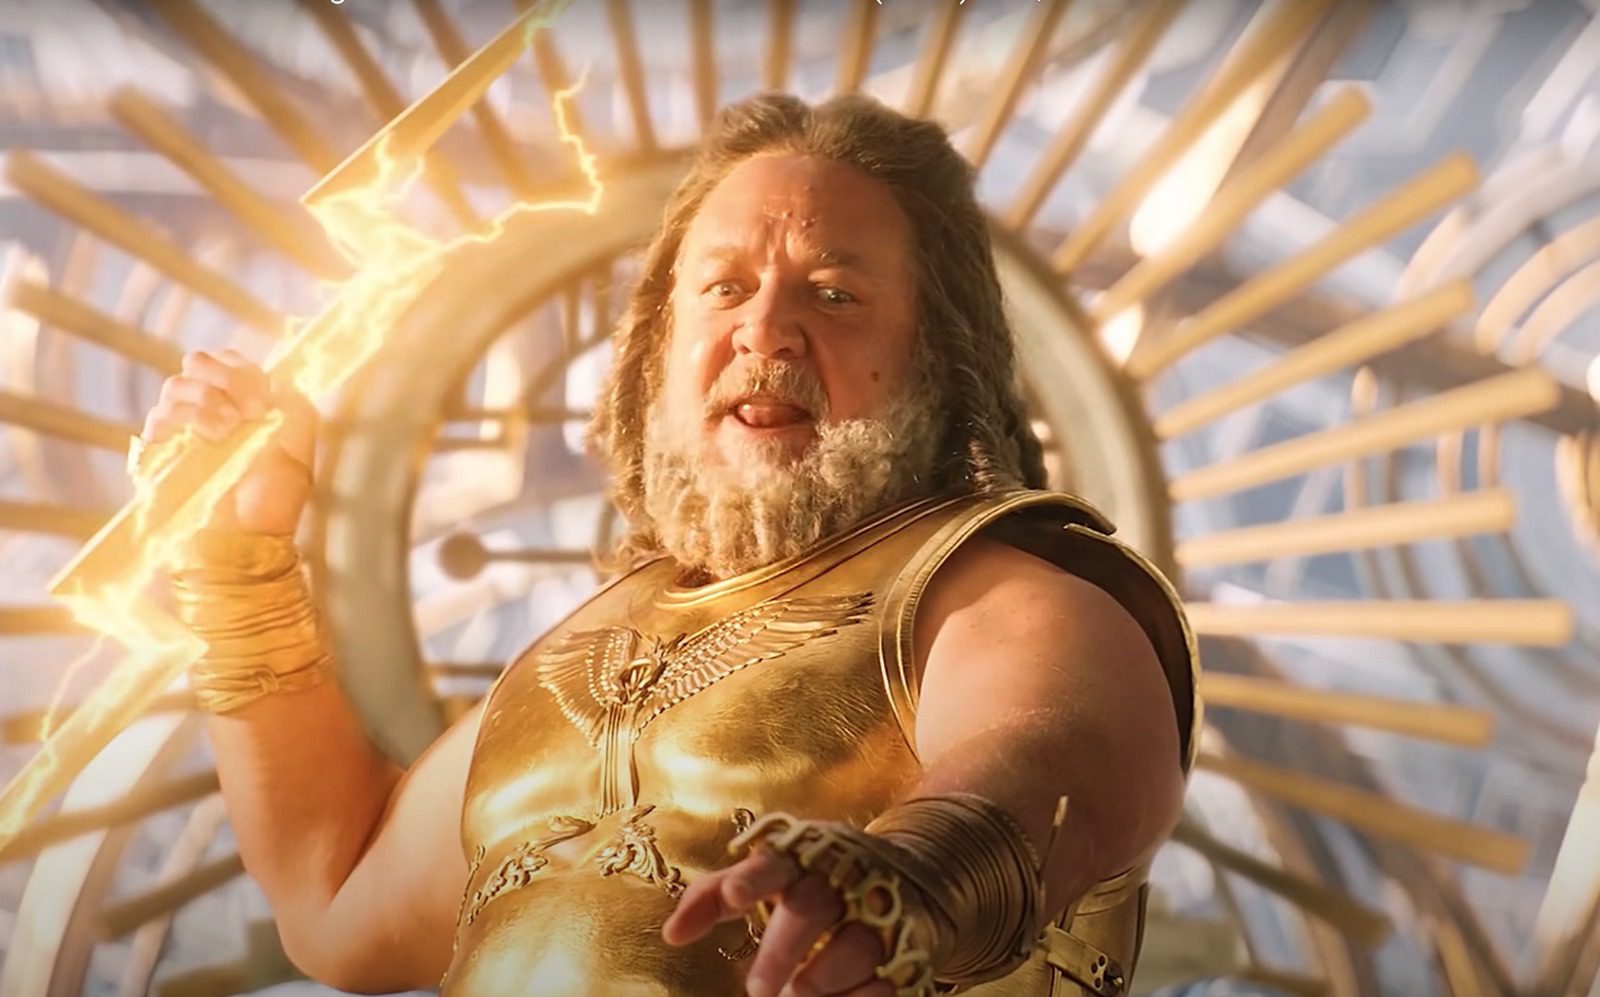 Thor Ragnarok  Treinador revela como ator faz para manter o